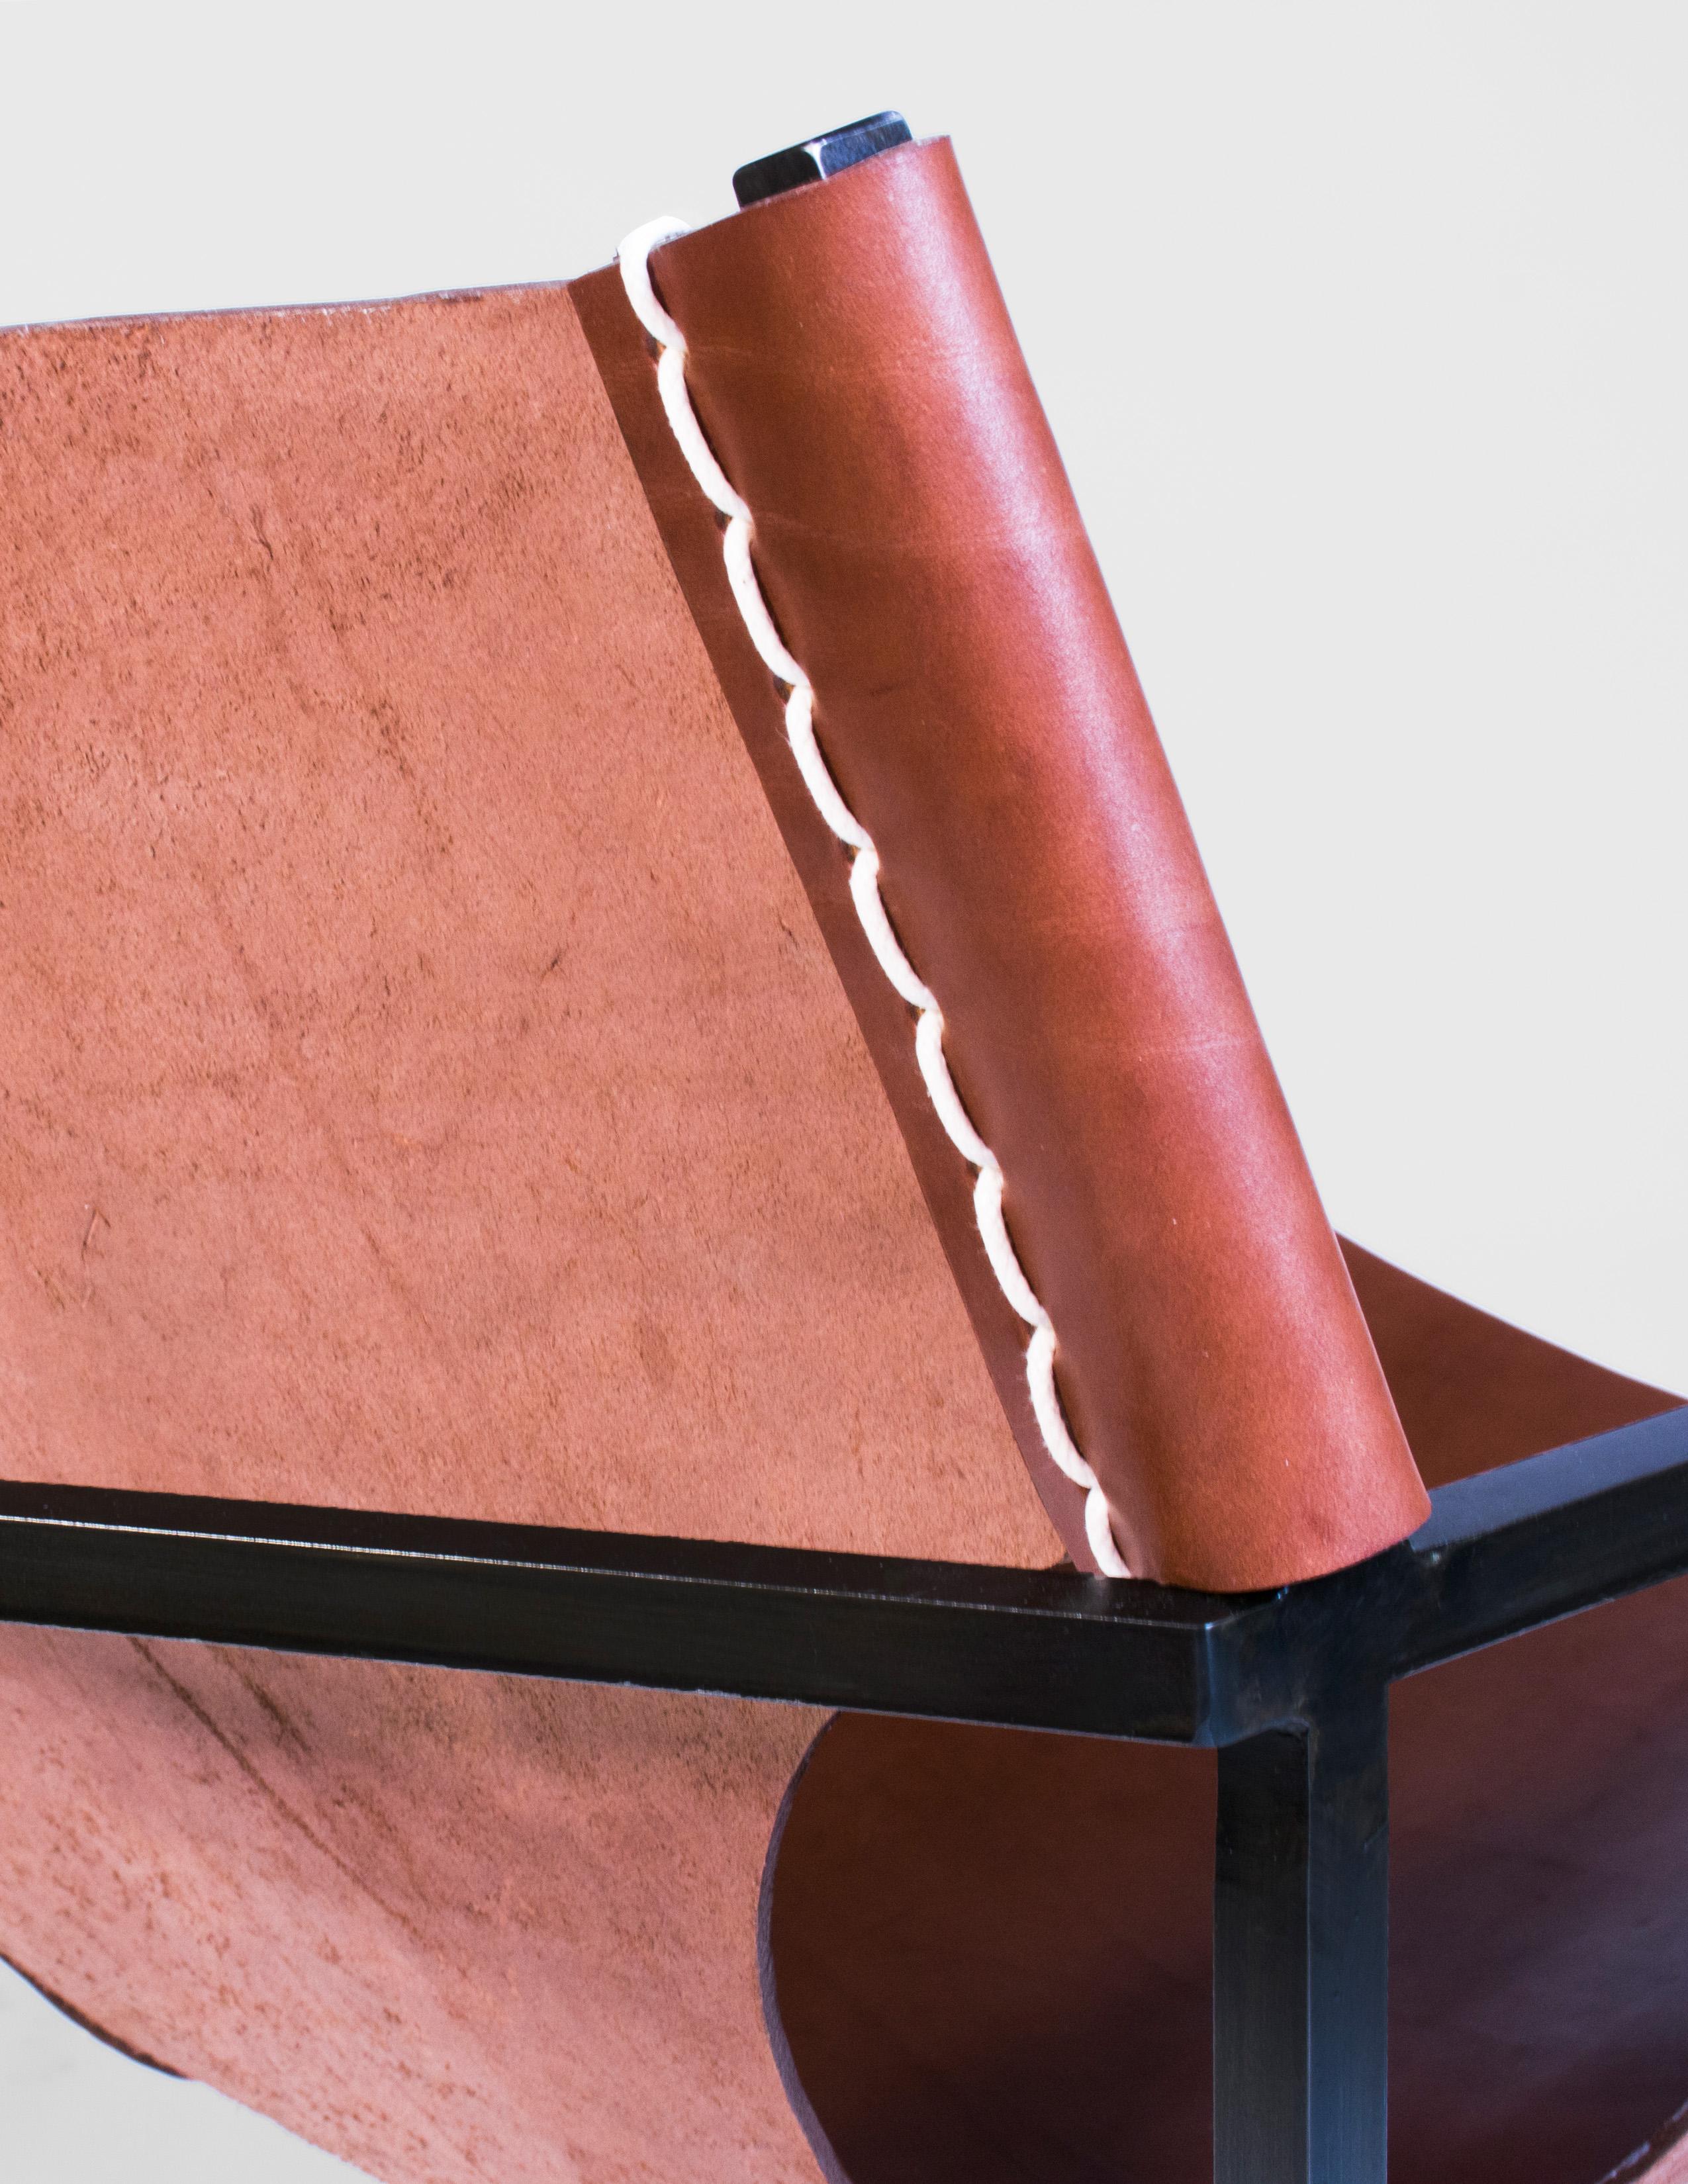 Handgefertigter Ledersessel aus tabakfarbenem Leder, befestigt an einem geschwärzten Stahlrahmen mit schwerem Sattelstich und gehämmerten Messingnieten. Ergonomisches Design für mehr Komfort. Entworfen und hergestellt auf Bestellung in New